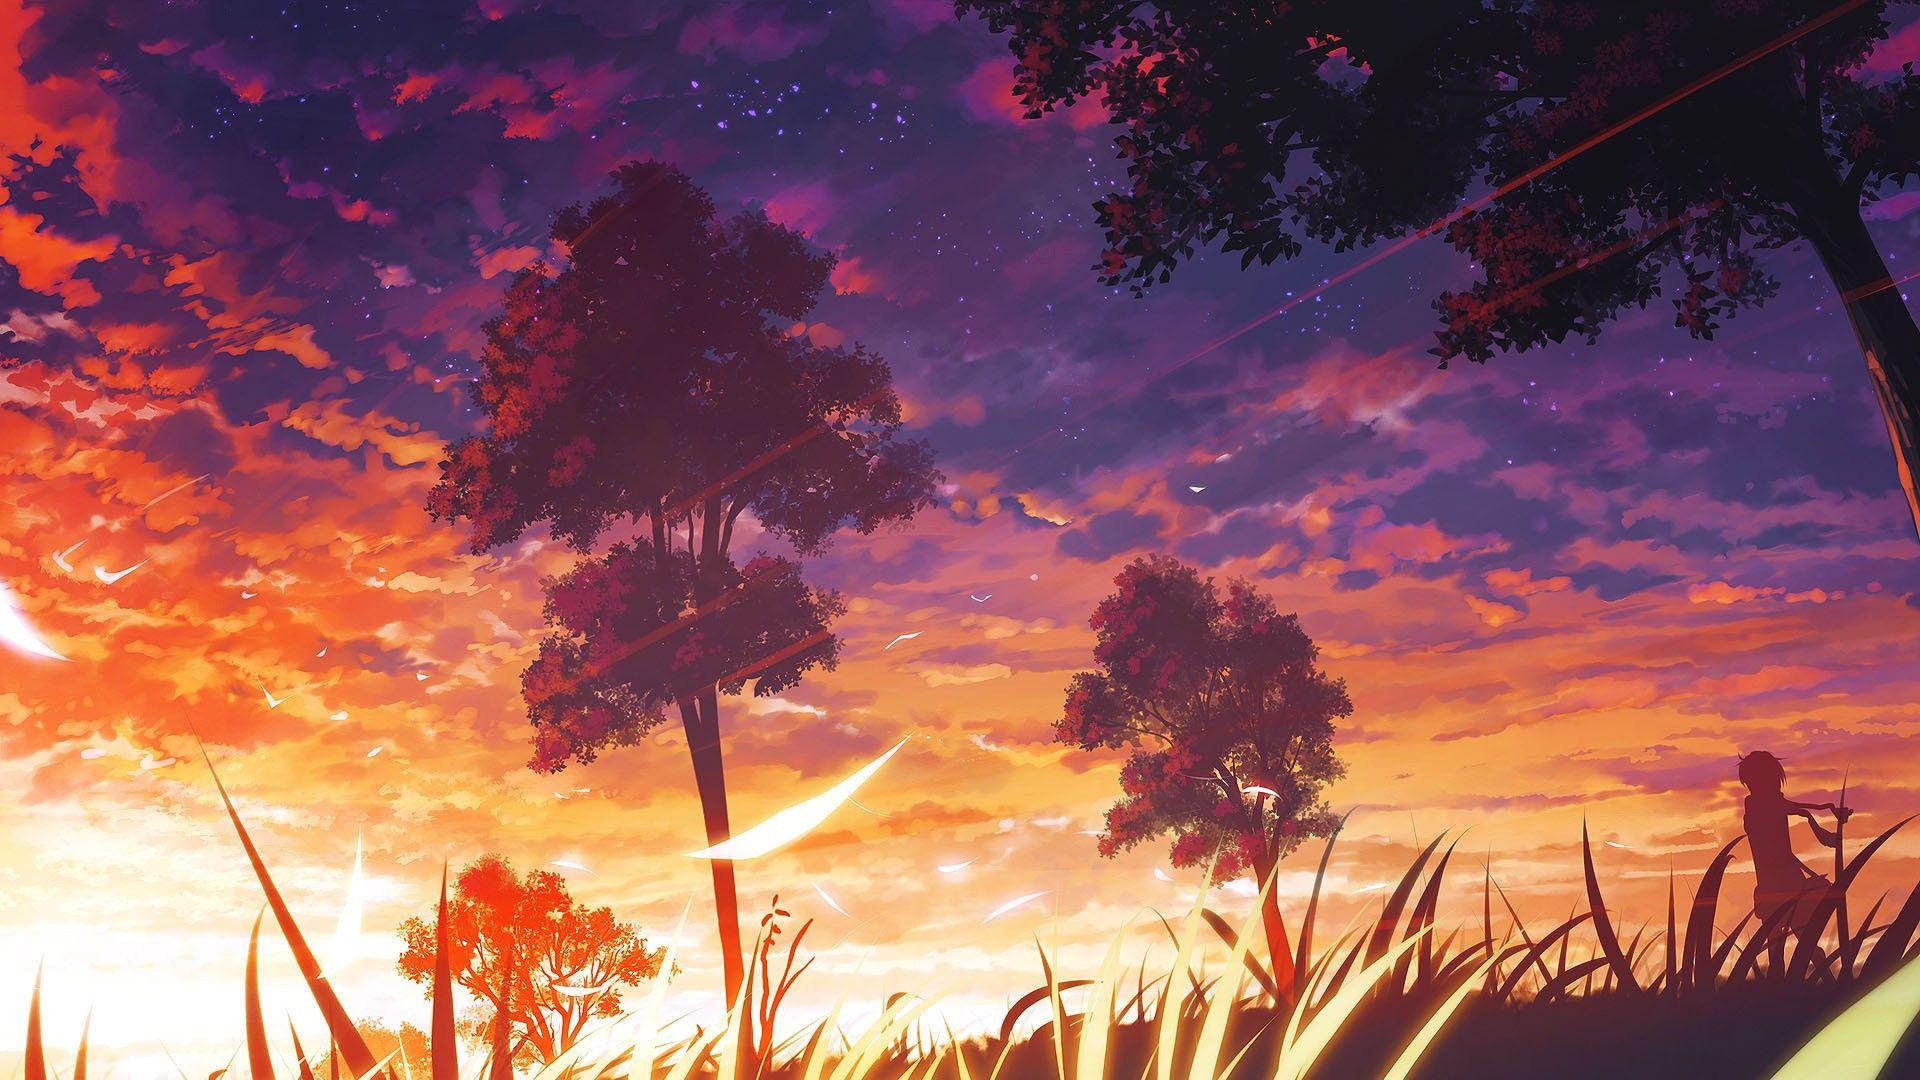 Sunset anime wallpaper [1920x1080]. wallpaper in 2019